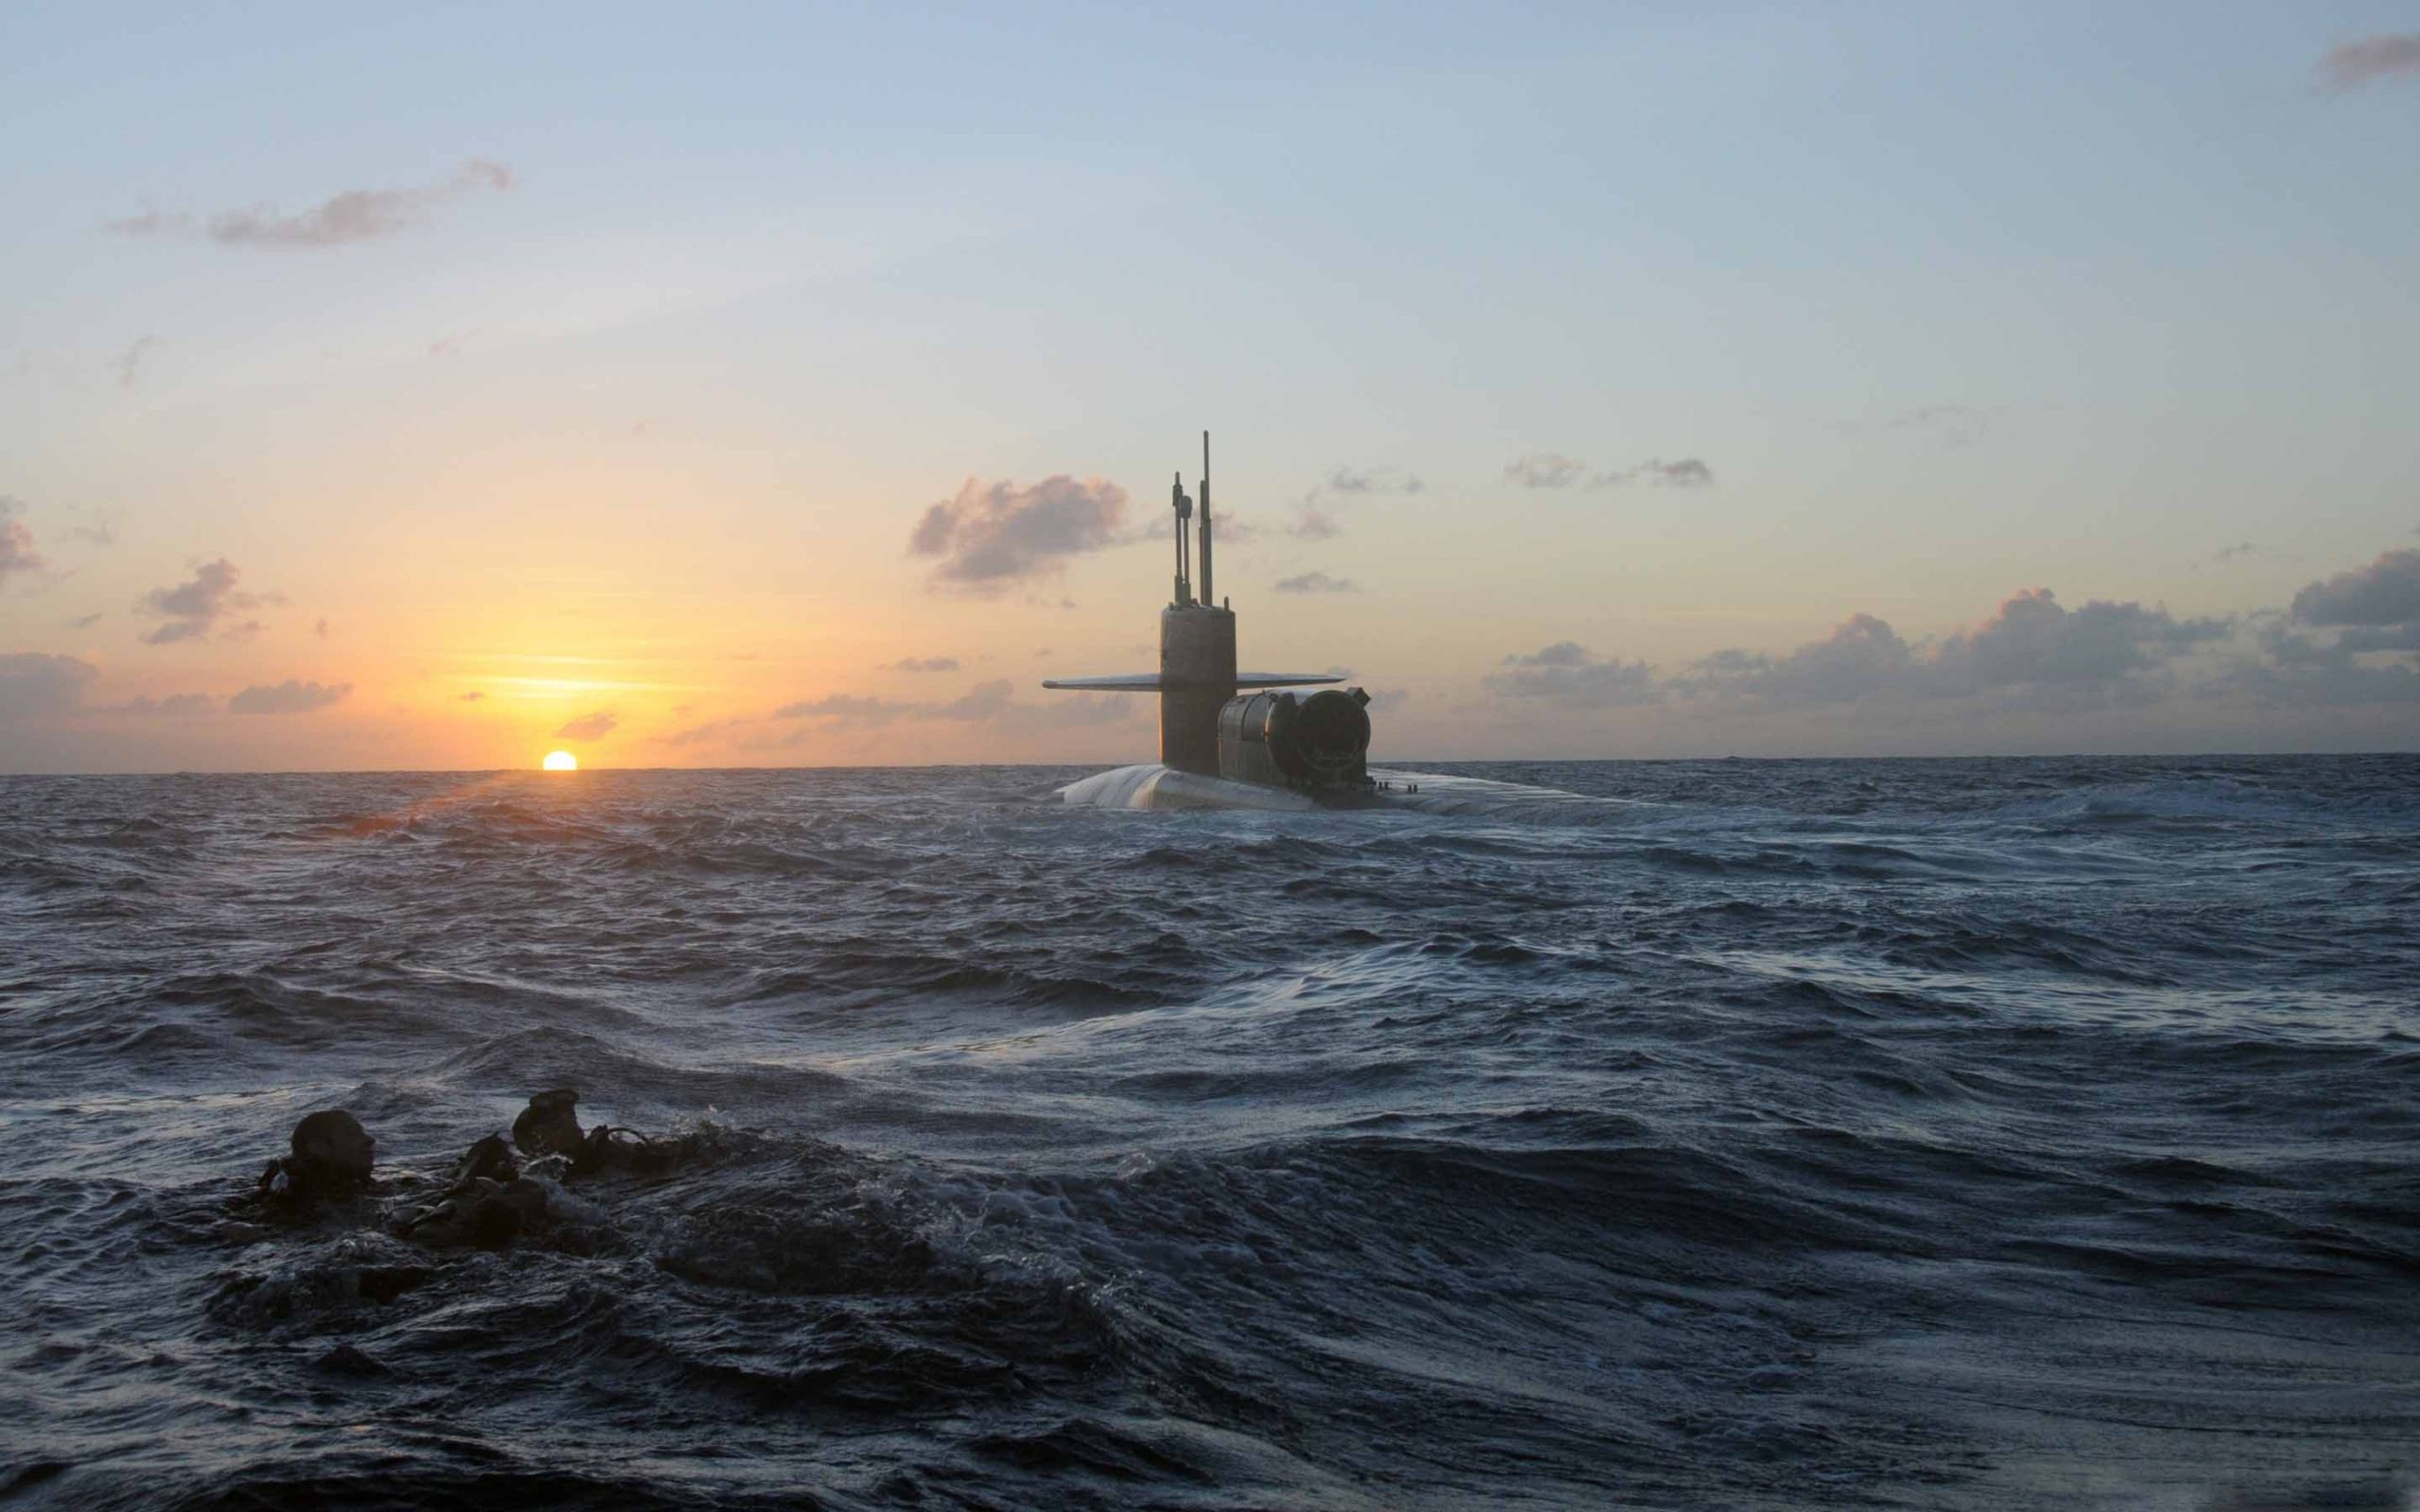 تصویر فوق العاده قشنگ از زیردریایی در آب با غروب دیدنی 